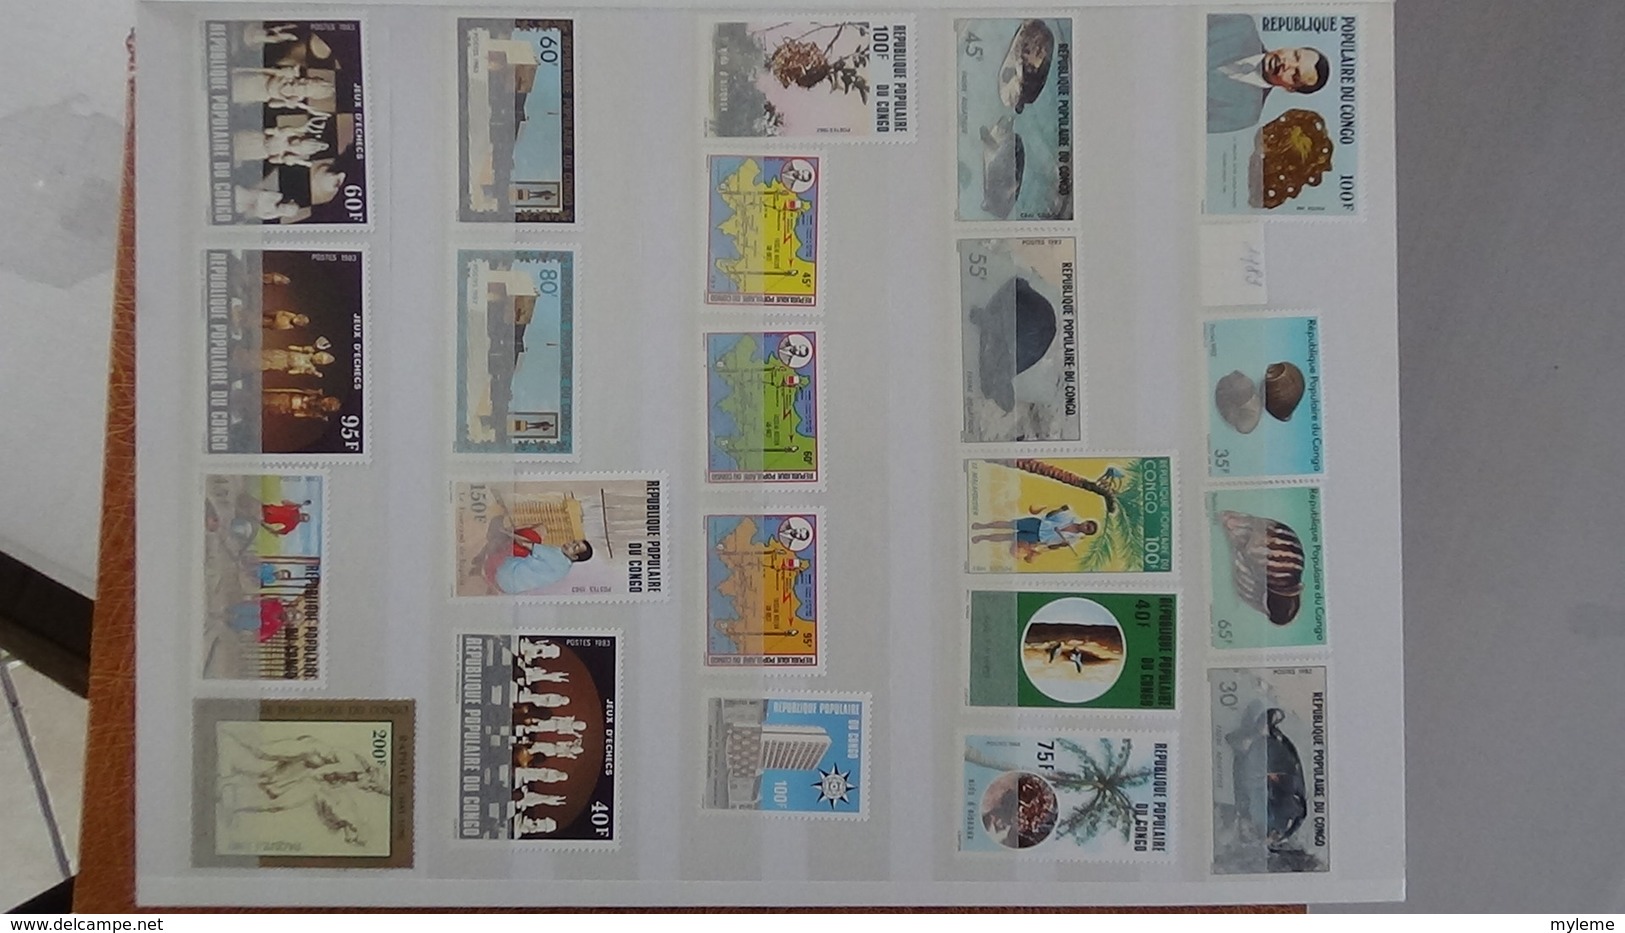 D13 Dispersion d'une très grosse collection de timbres et blocs ** d'Afrique dont Congo et Côte d'Ivoire. Voir commentai